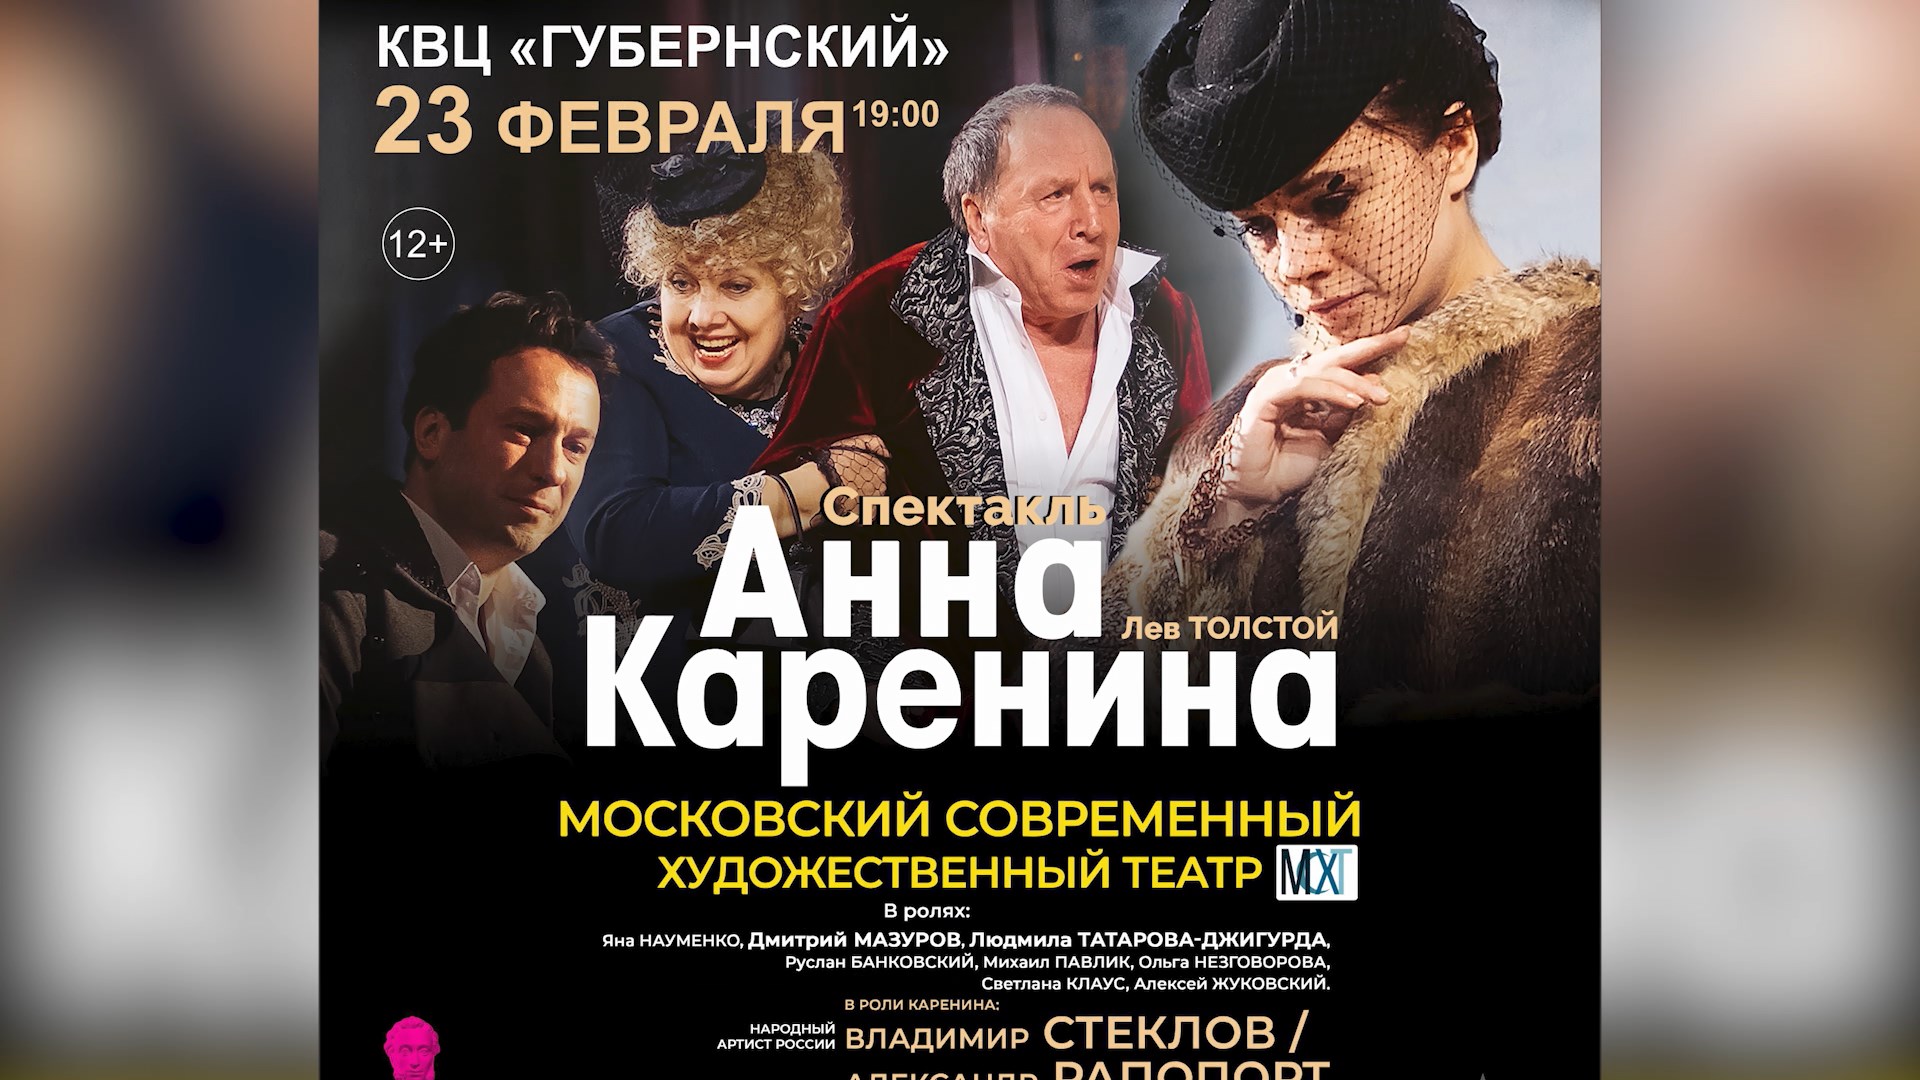 Костромичам покажут спектакль «Анна Каренина» по мотивам легендарного романа Льва Толстого